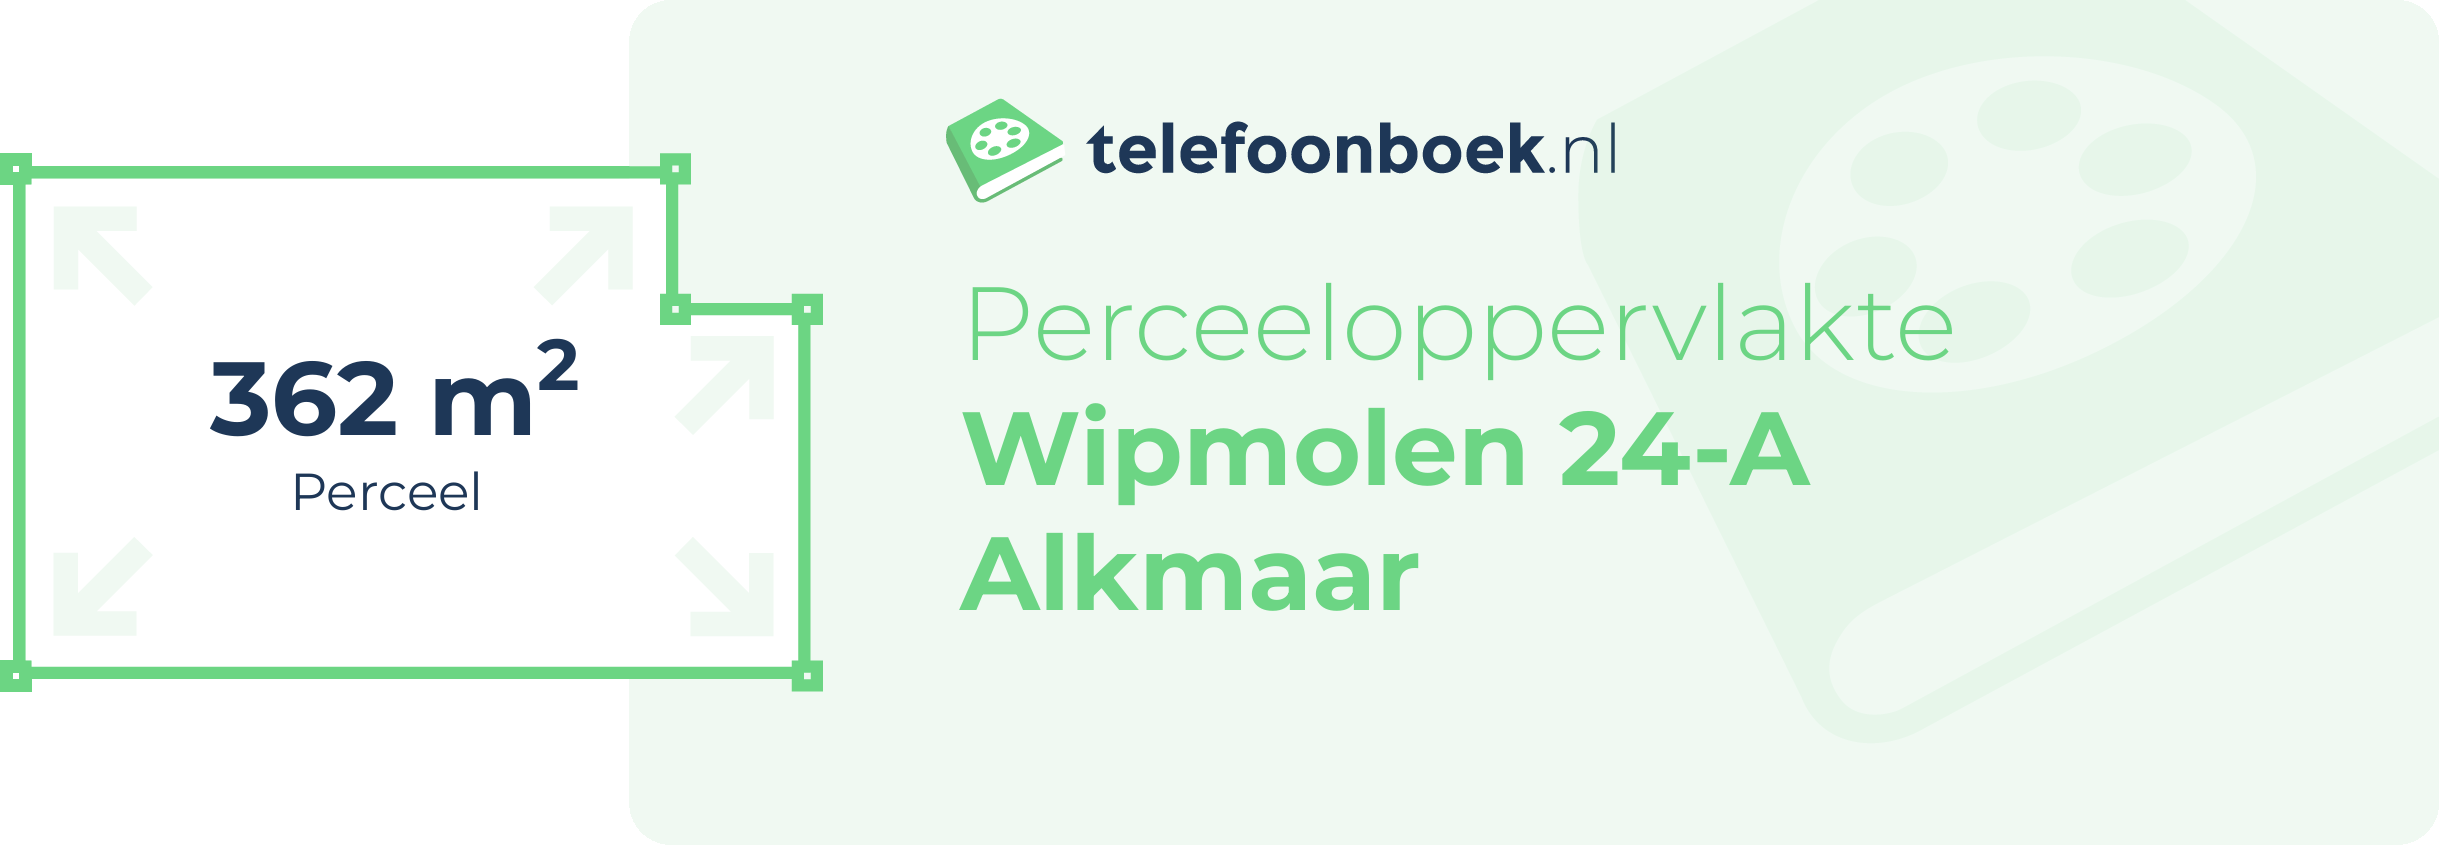 Perceeloppervlakte Wipmolen 24-A Alkmaar